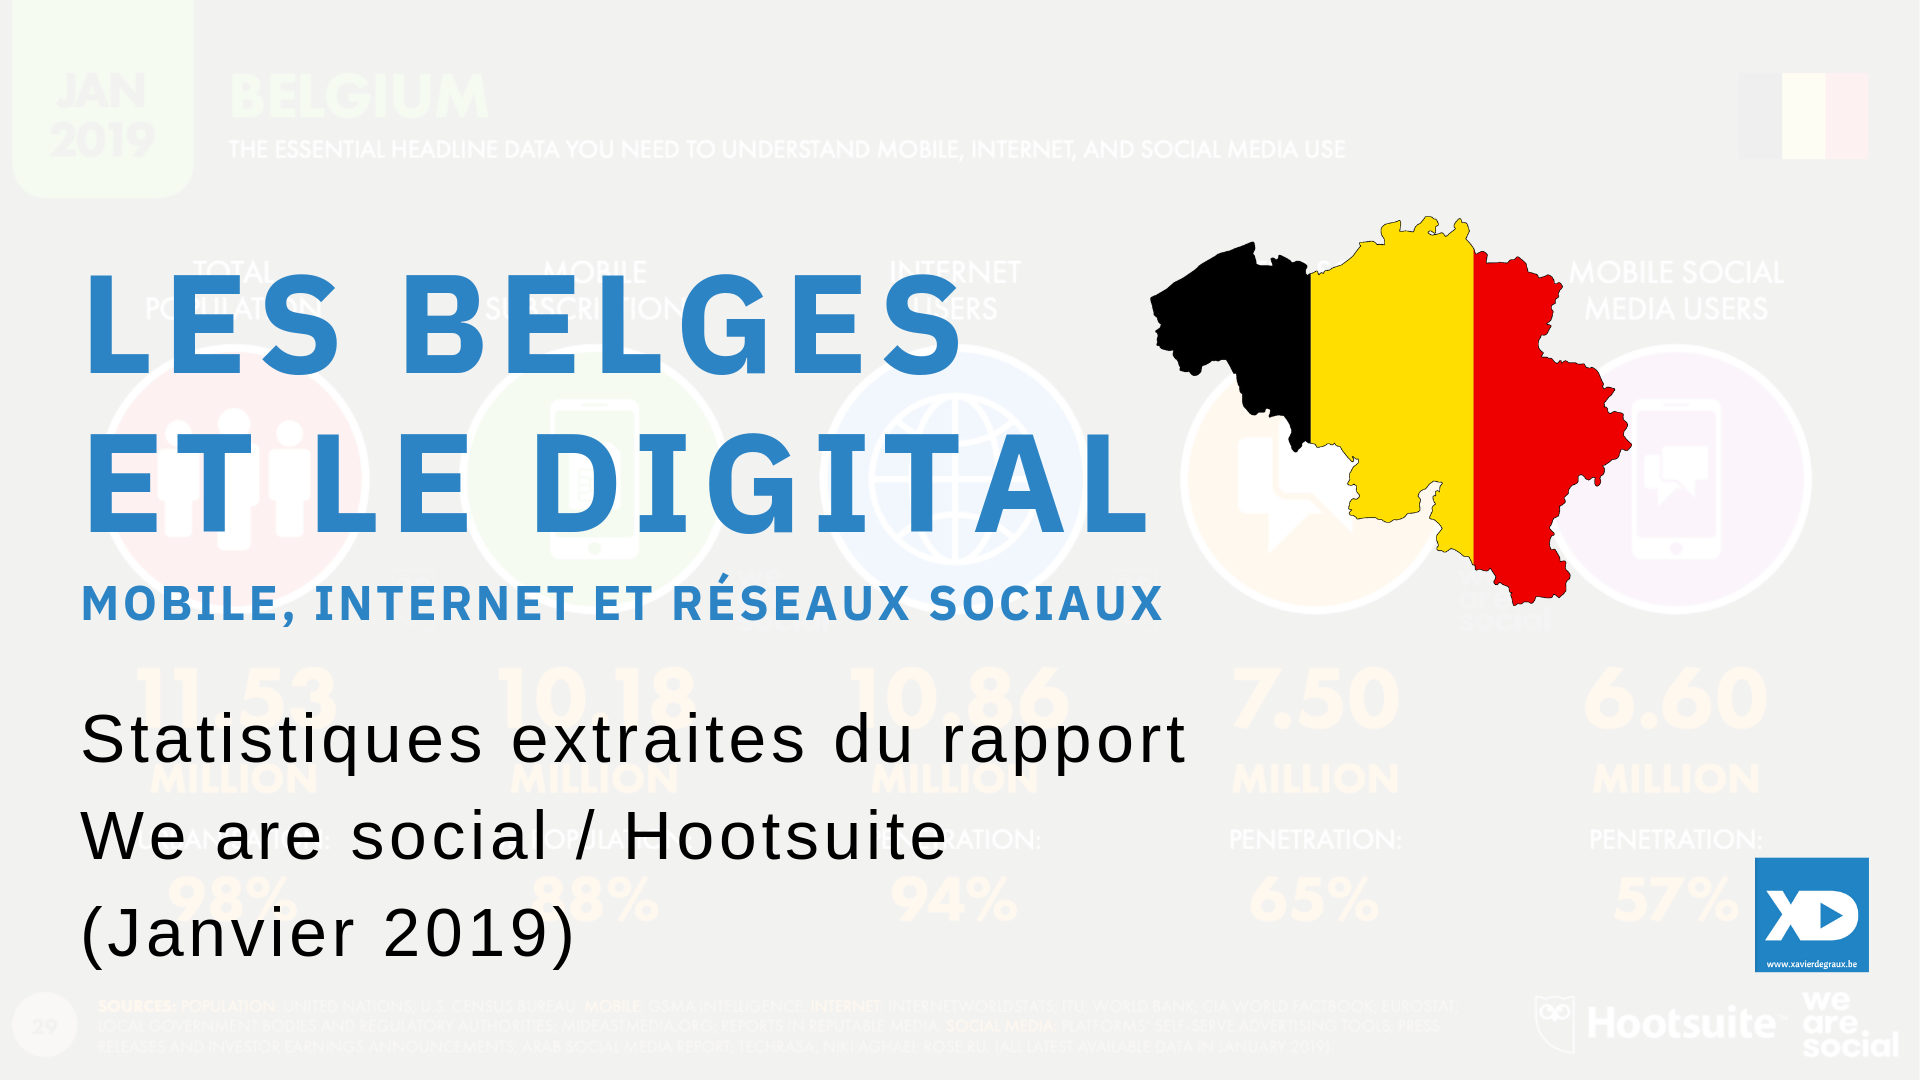 Les Belges et le digital : voici toutes les statistiques de référence (janvier 2019)